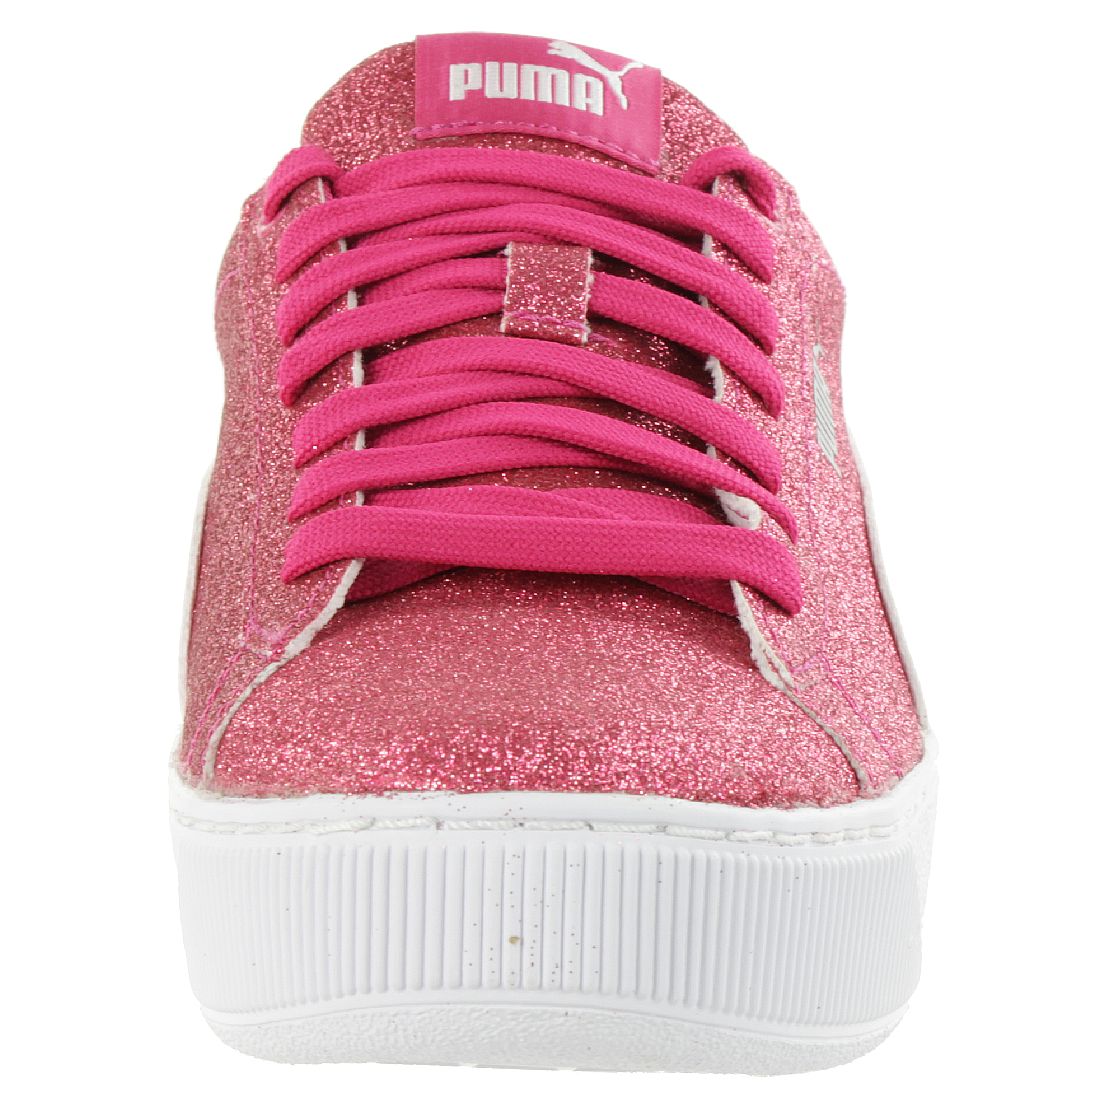 Puma Vikky Platform Glitzer Junior Mädchen Damen Schuh Pink 366856 01